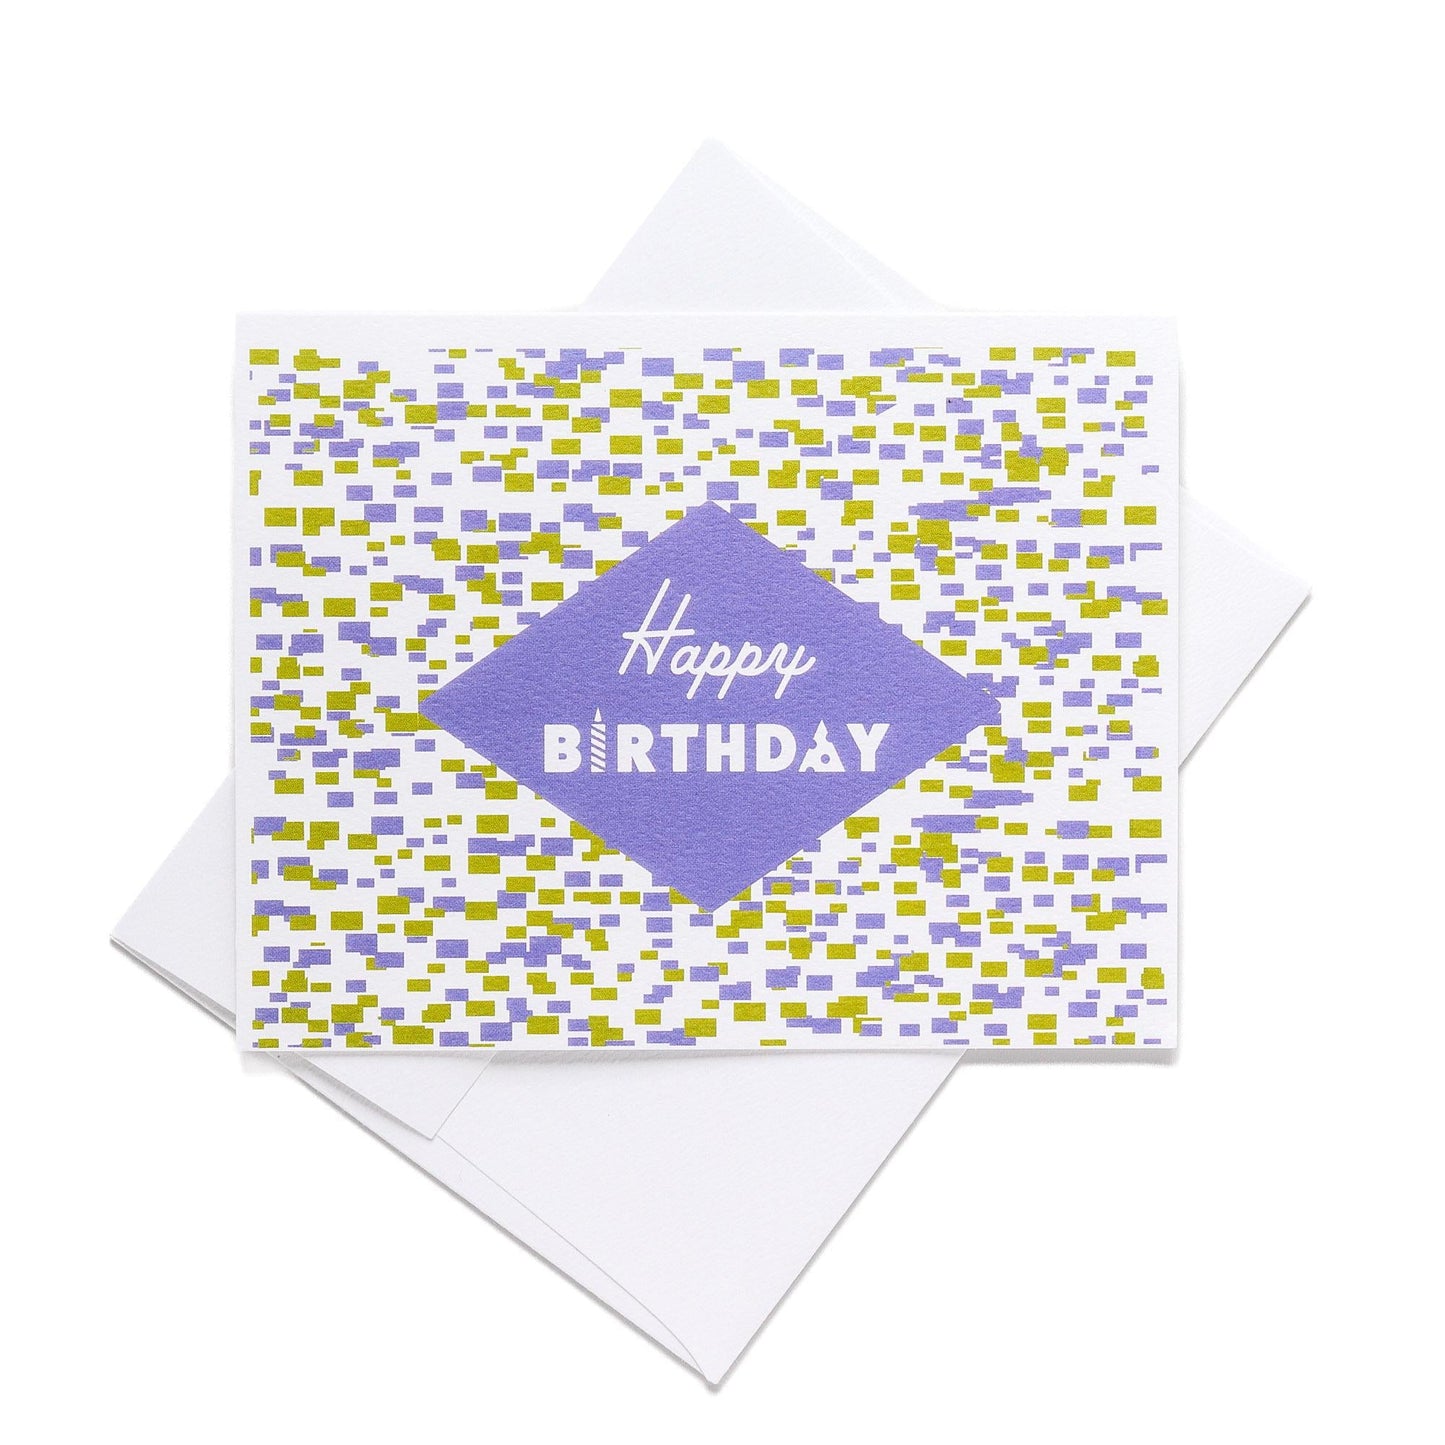 Happy Birthday Note Card - Purple Confetti - Blue Kite Press